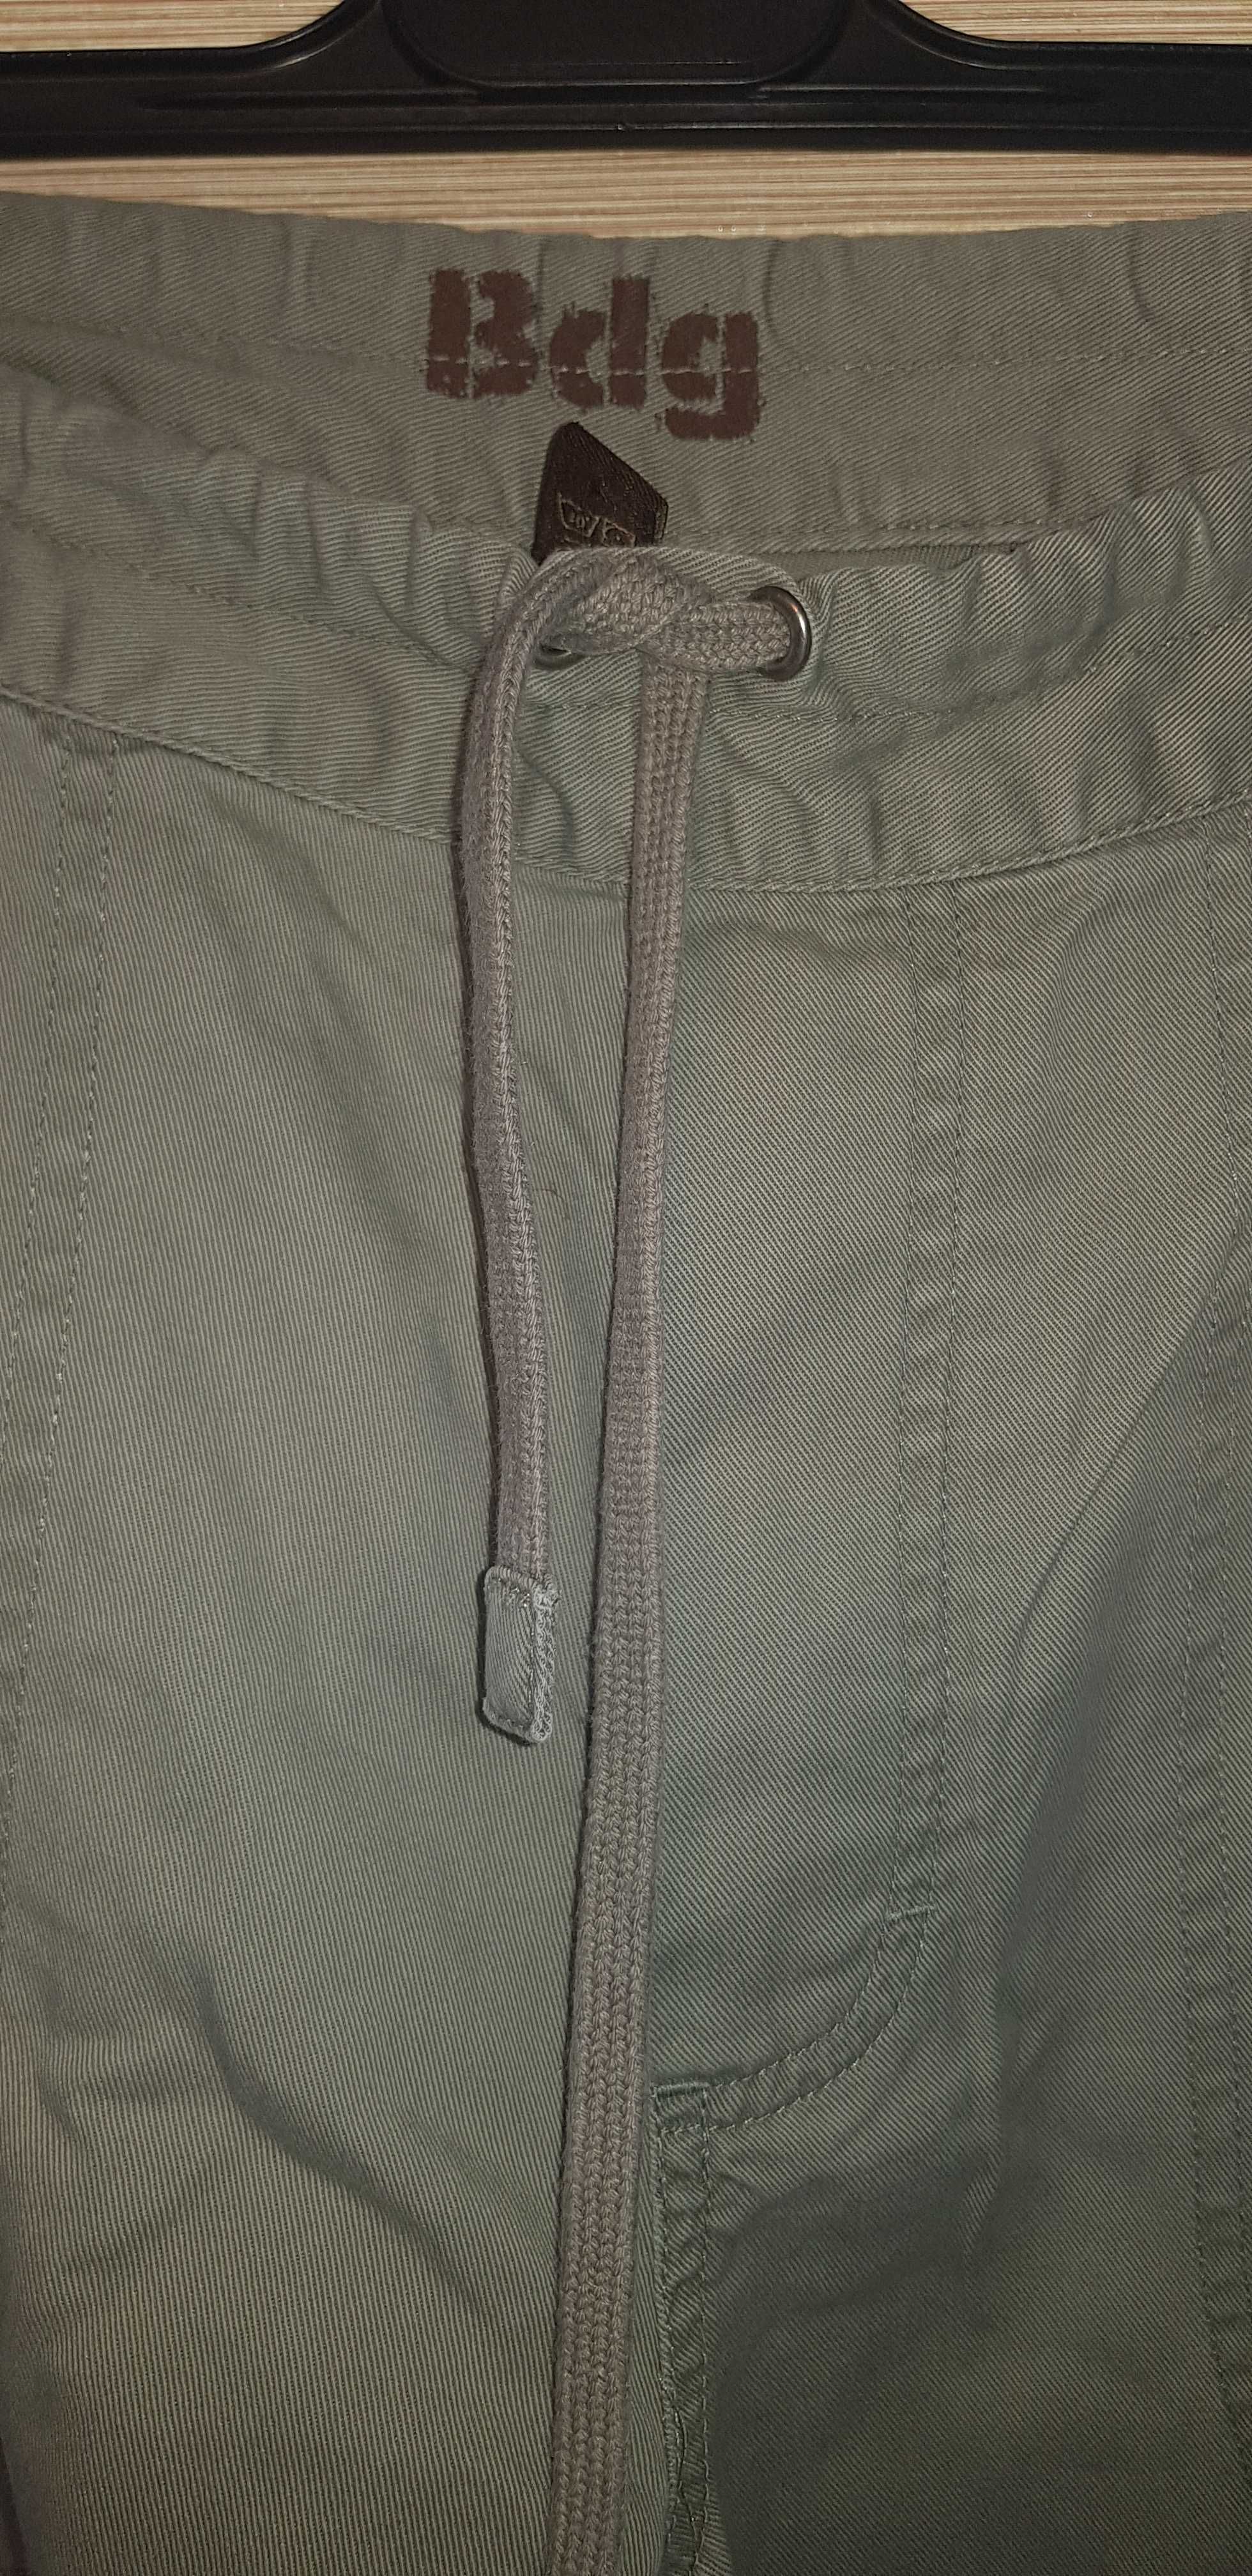 Spodnie męskie marki Bdg- rozmiar M